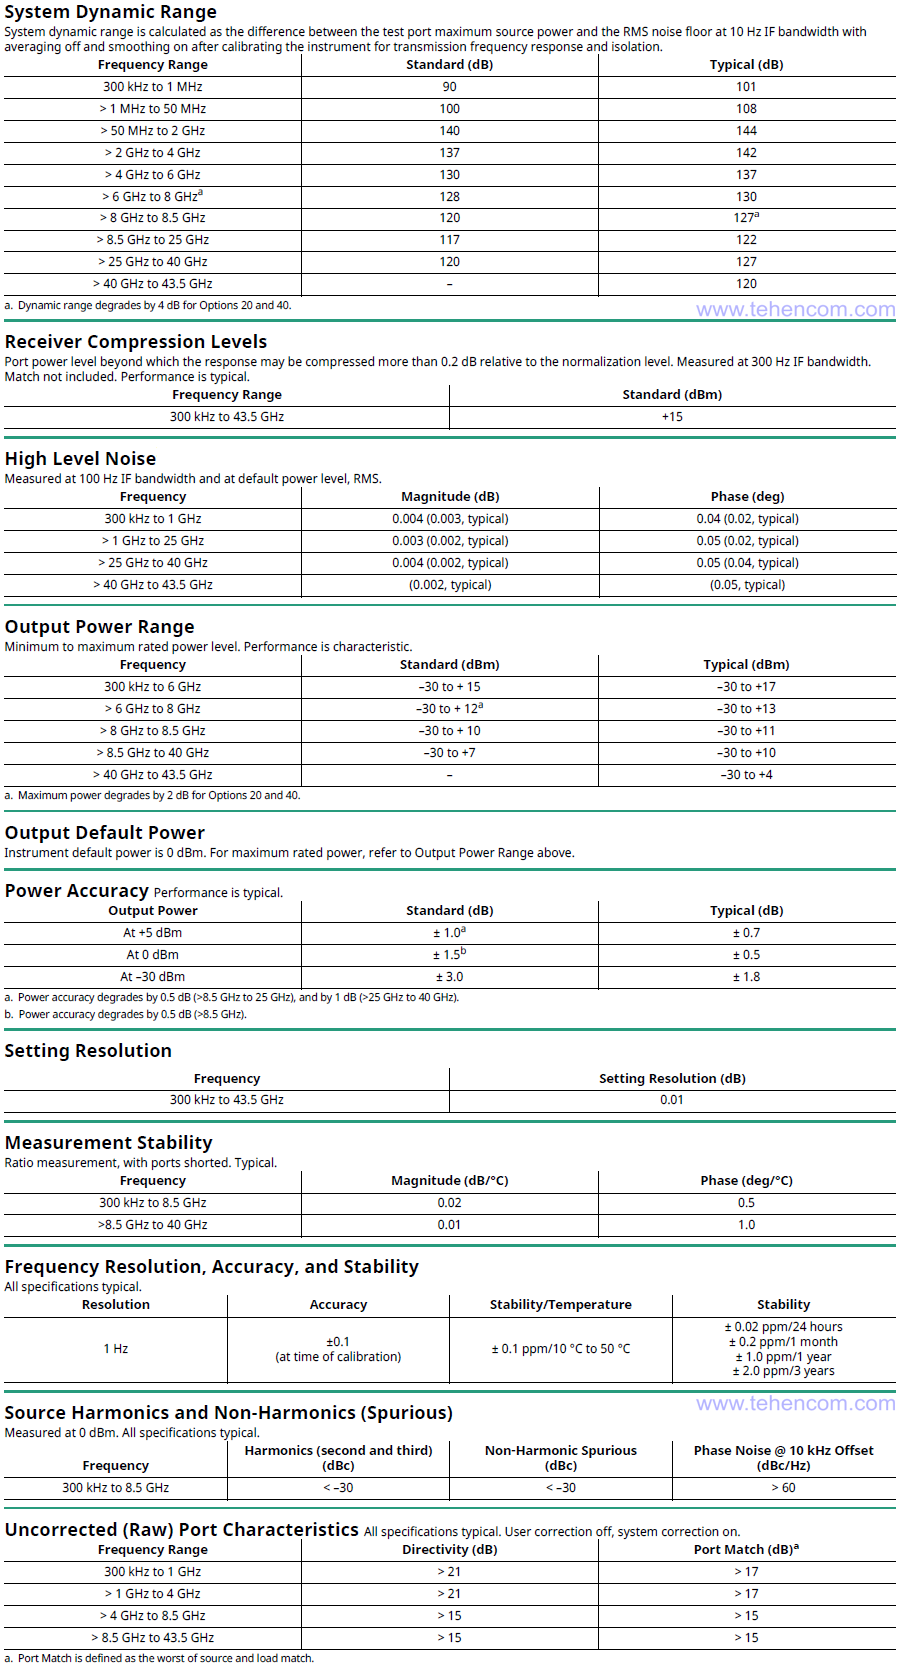 Технические характеристики 4-х портовых векторных анализаторов цепей Anritsu MS46524B (модели: Anritsu MS46524B-010, MS46524B-020 и MS46524B-040)